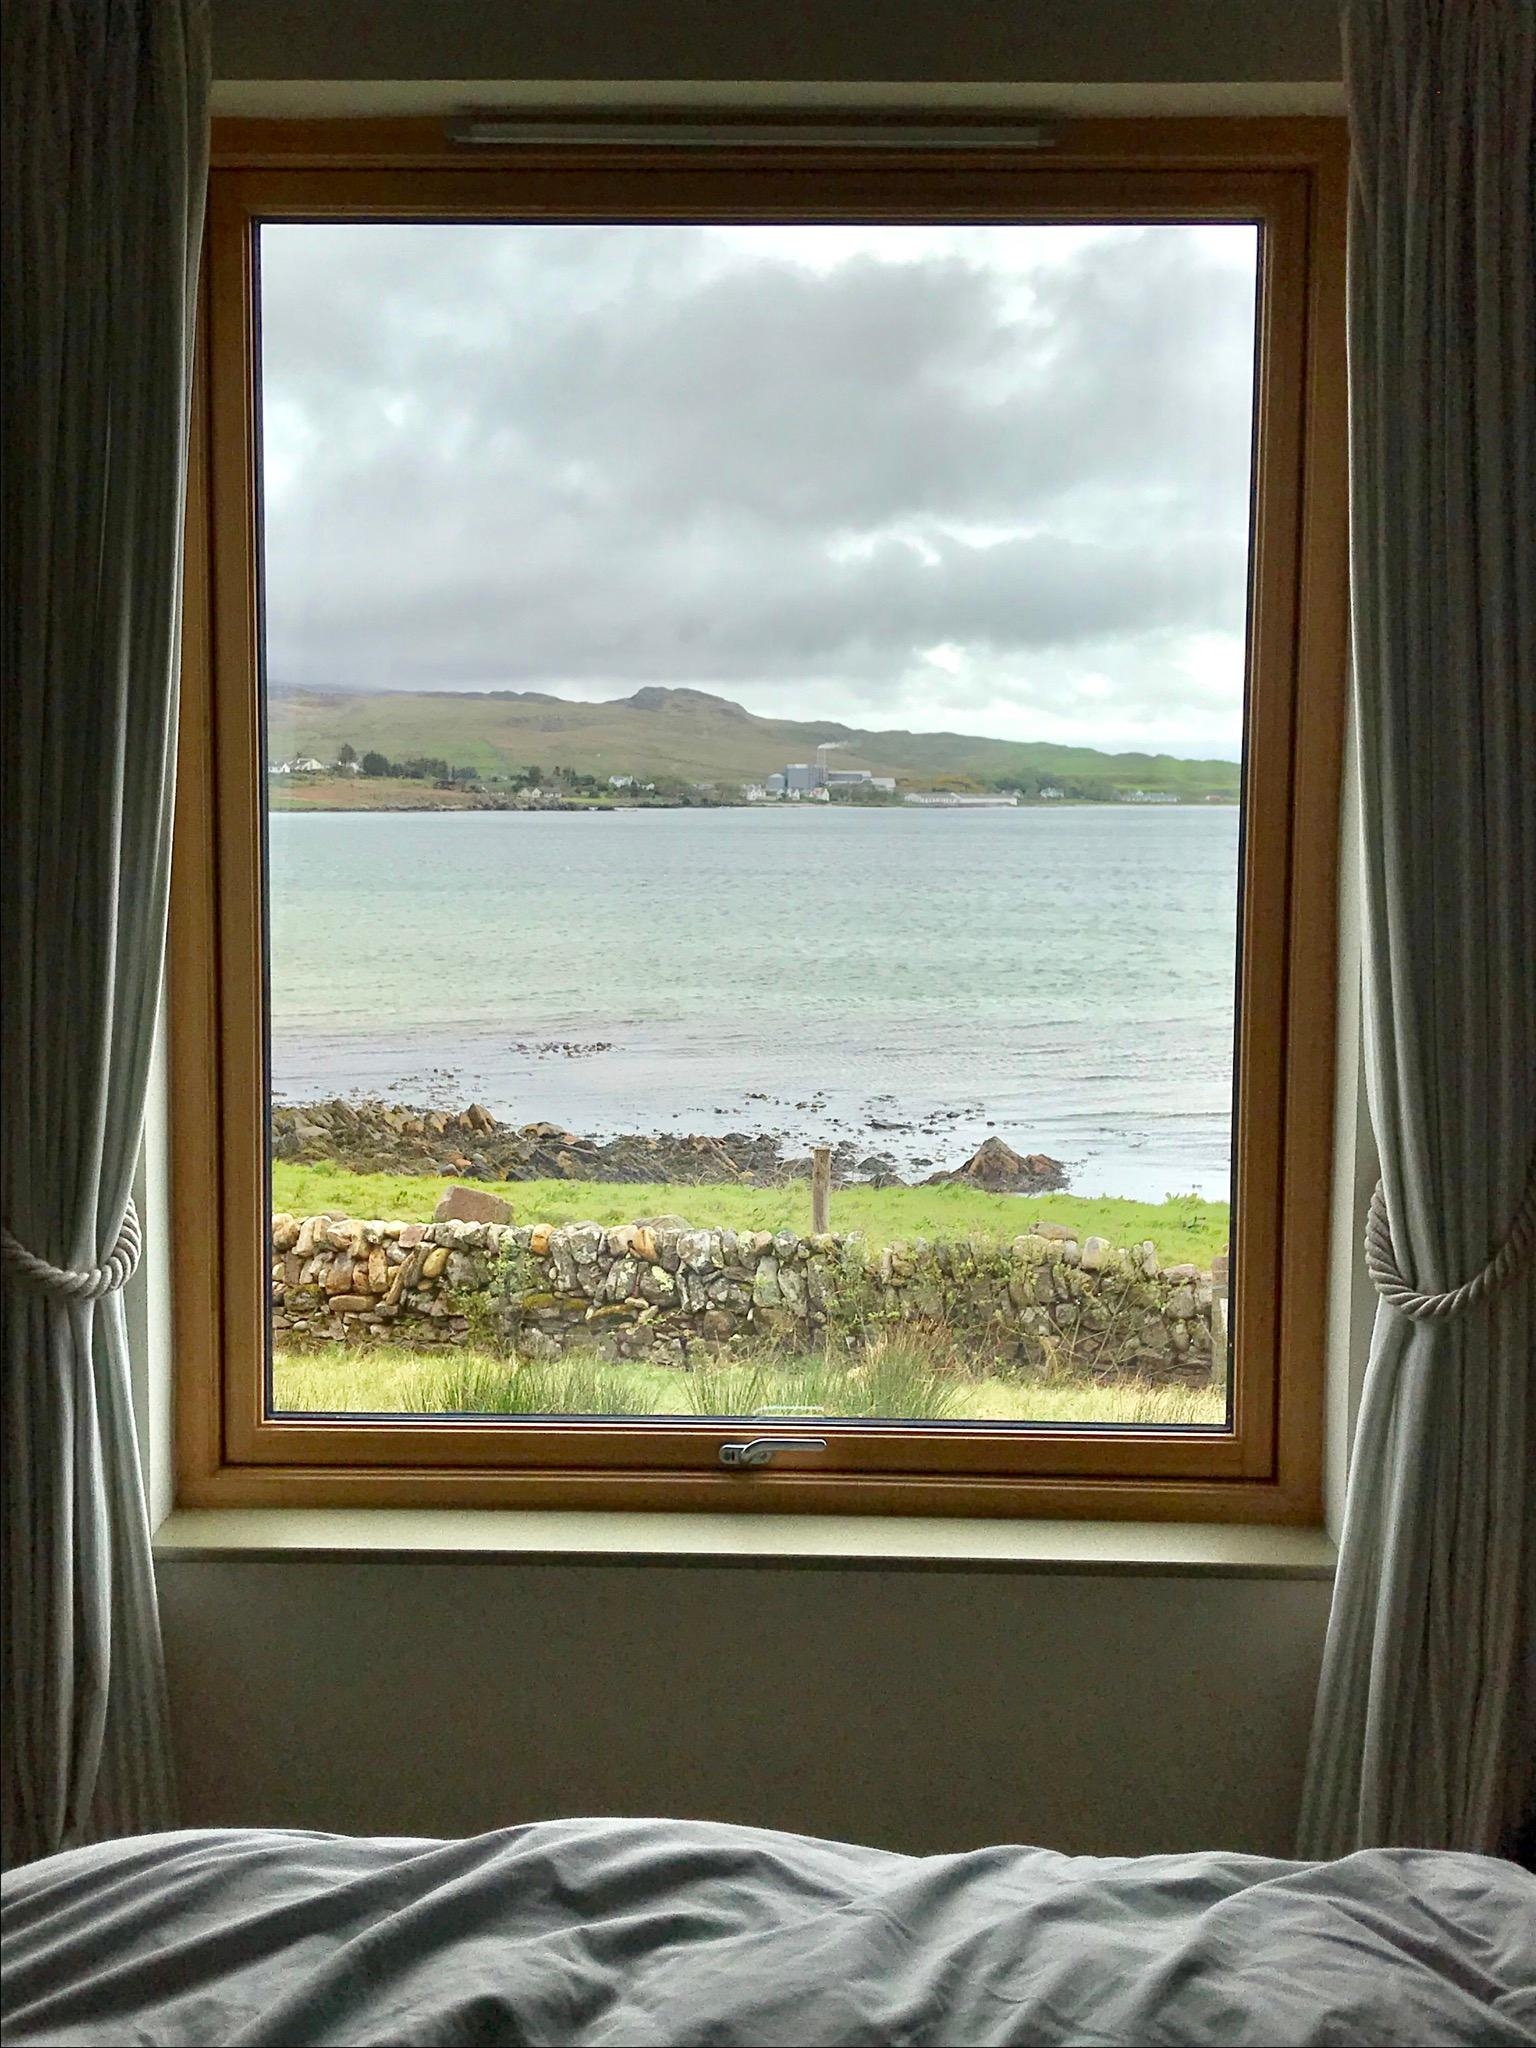 Die bislang schönste Aussicht vom Bett aus im Urlaub. Islay, Schottland
#travelchallenge #meinschönsterurlaub 